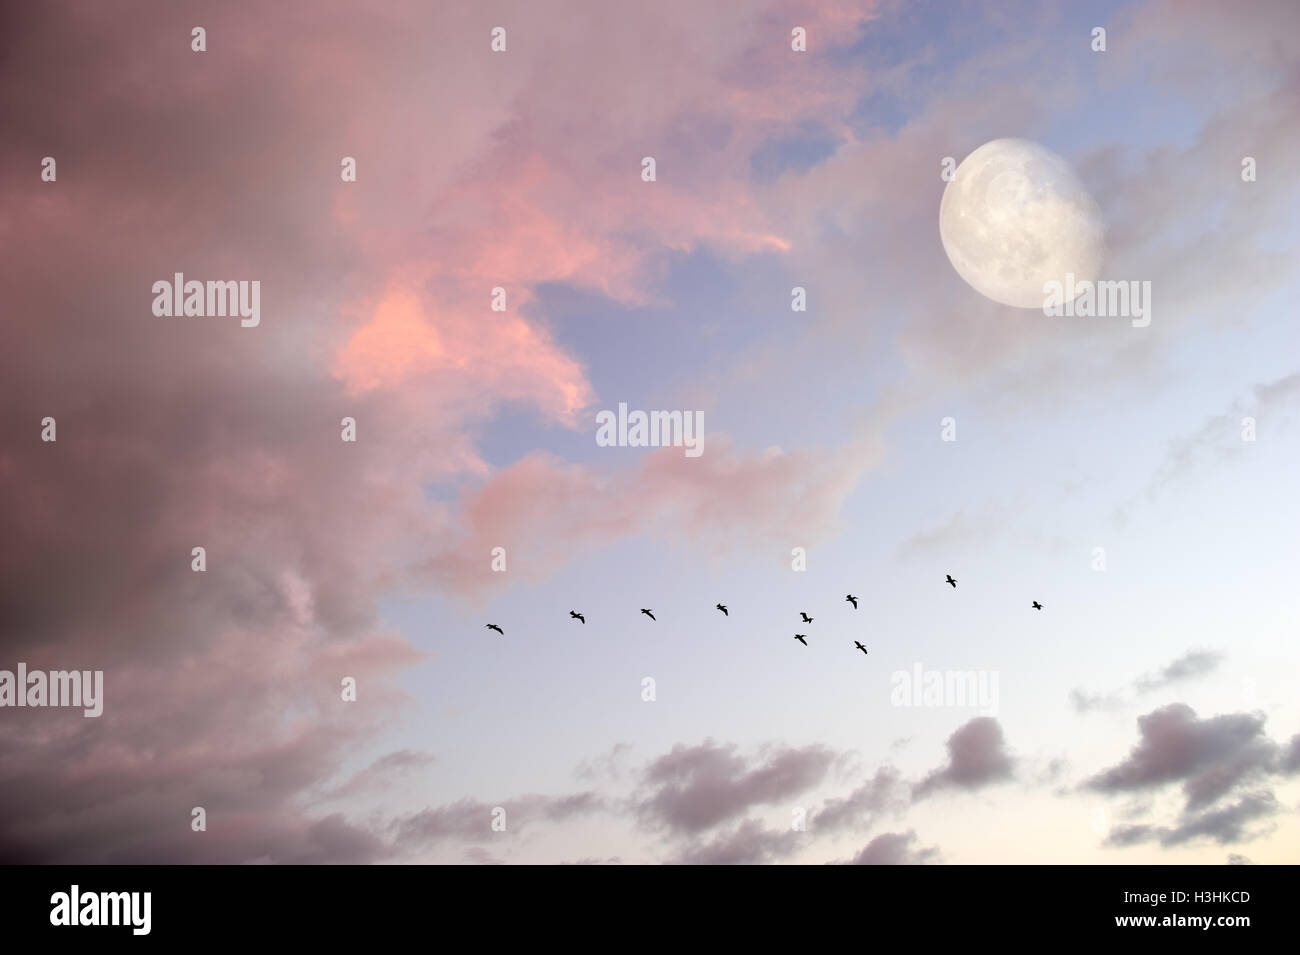 Uccelli luna è uno stormo di uccelli in volo tra nuvole rosa come la luna piena sorge nel cielo. Foto Stock